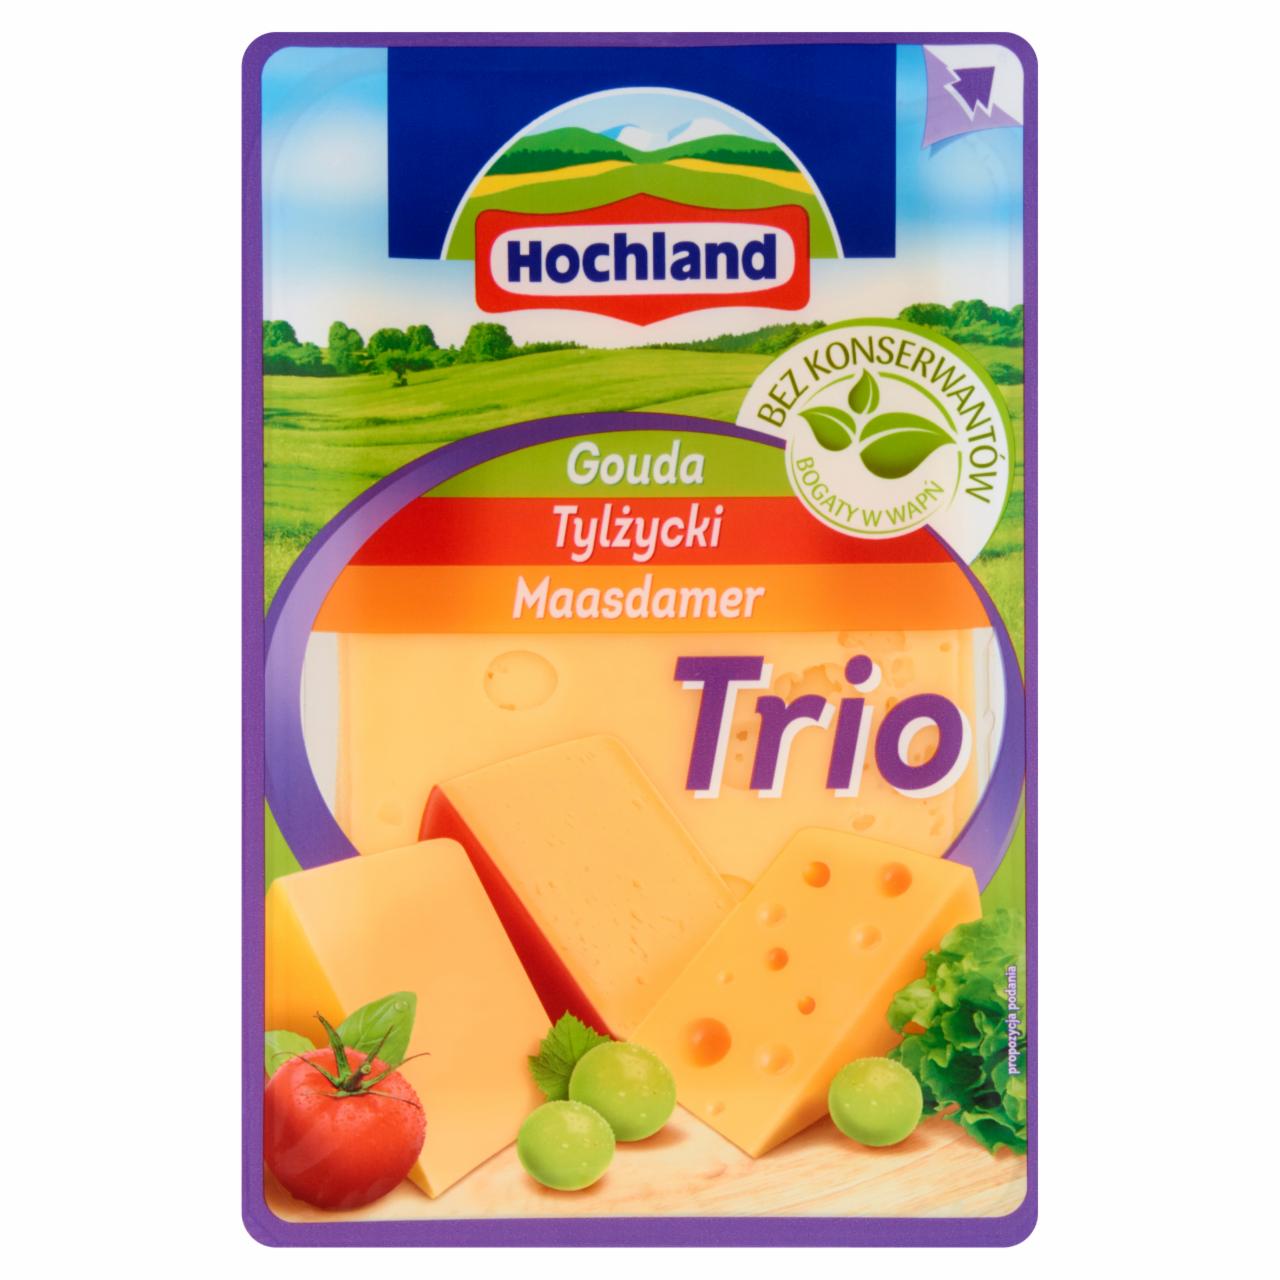 Zdjęcia - Hochland Trio Gouda Tylżycki Maasdamer Ser żółty w plastrach 150 g